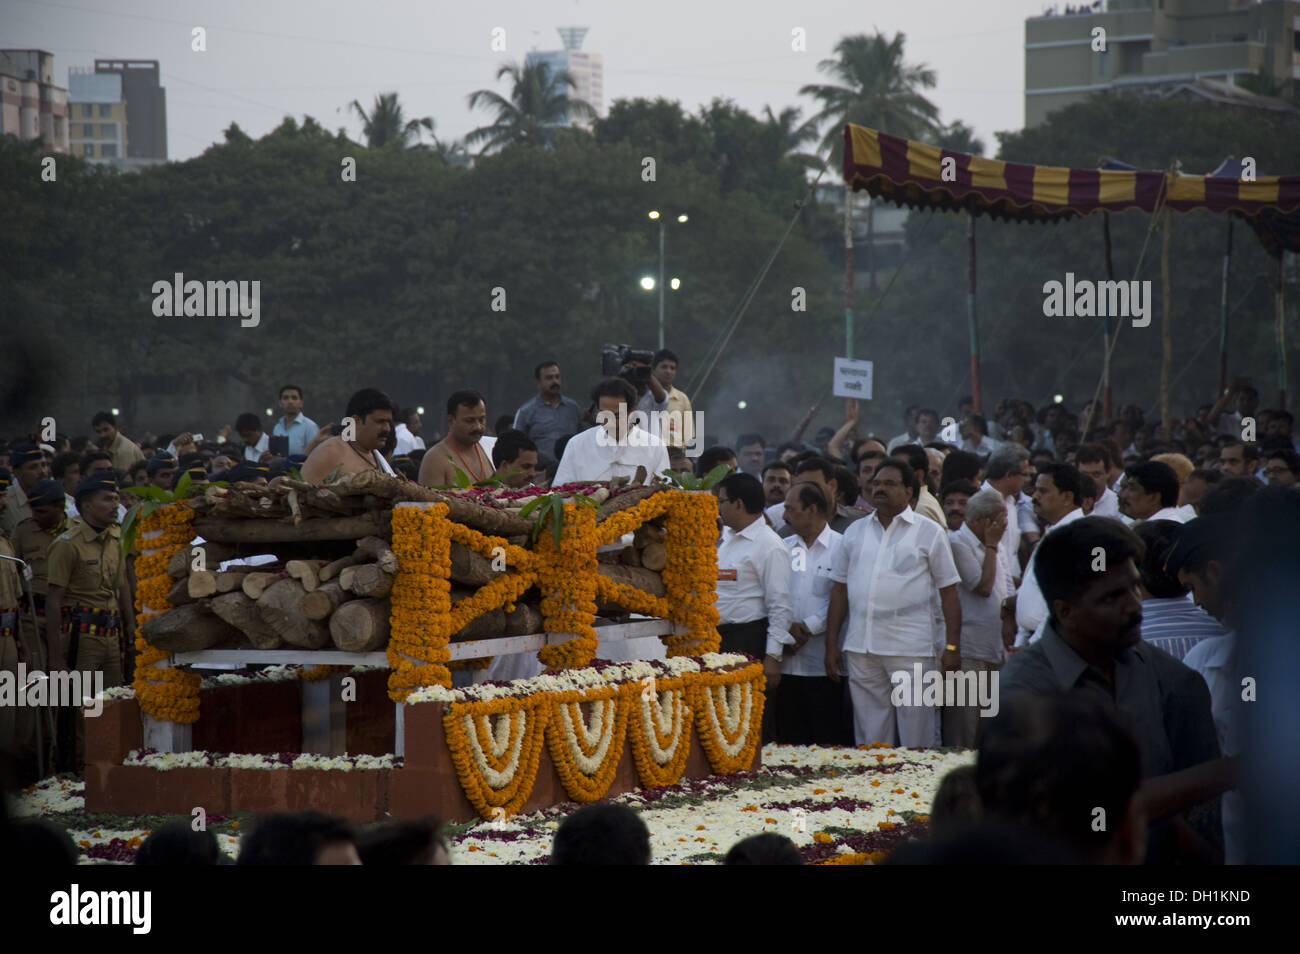 uddhav Thackeray son of Bal Thackeray Crowd gathered to attend funeral of Shiv Sena Chief Balasaheb Thackeray at shivaji park dadar west mumbai maharashtra india asia Stock Photo